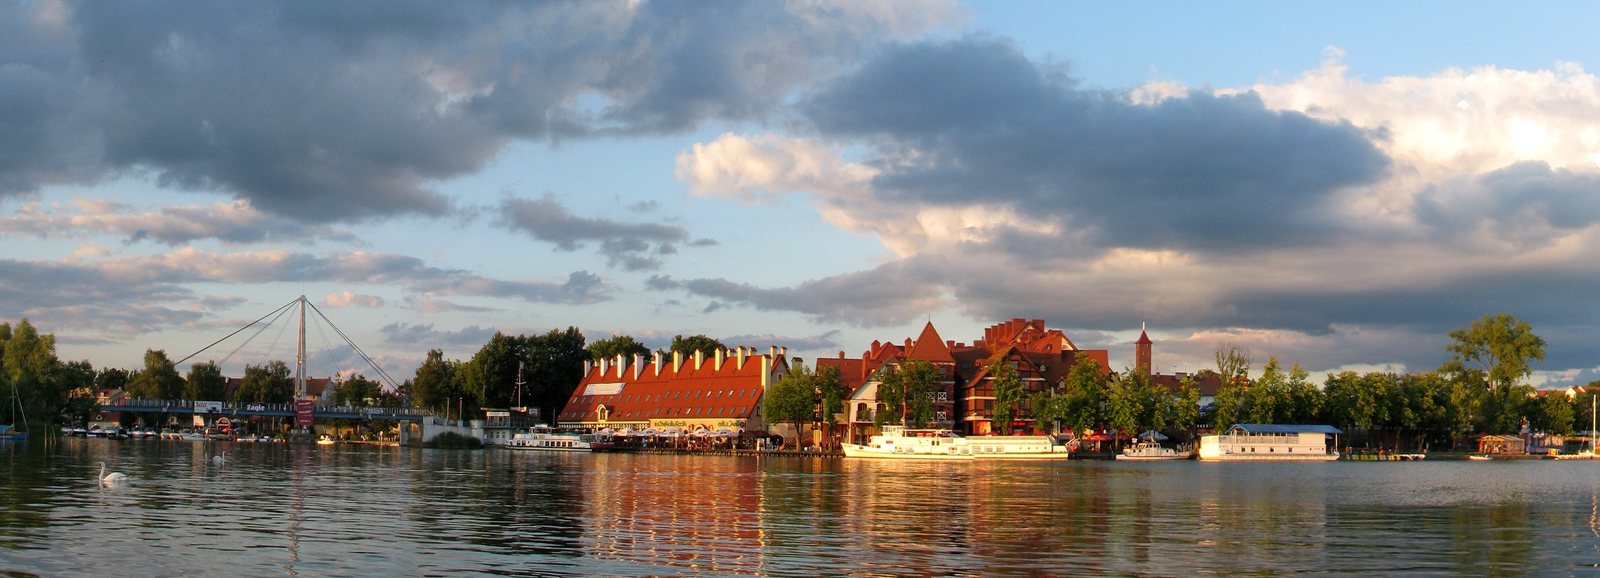 Fotografia prezentuje panoramę budynków umiejscowionych nad wodą. Na brzegu widoczne zabudowania z czerwonymi dachami oraz cumujące przy brzegu białe statki. Na dalszym planie po lewej stronie zdjęcia widać most.